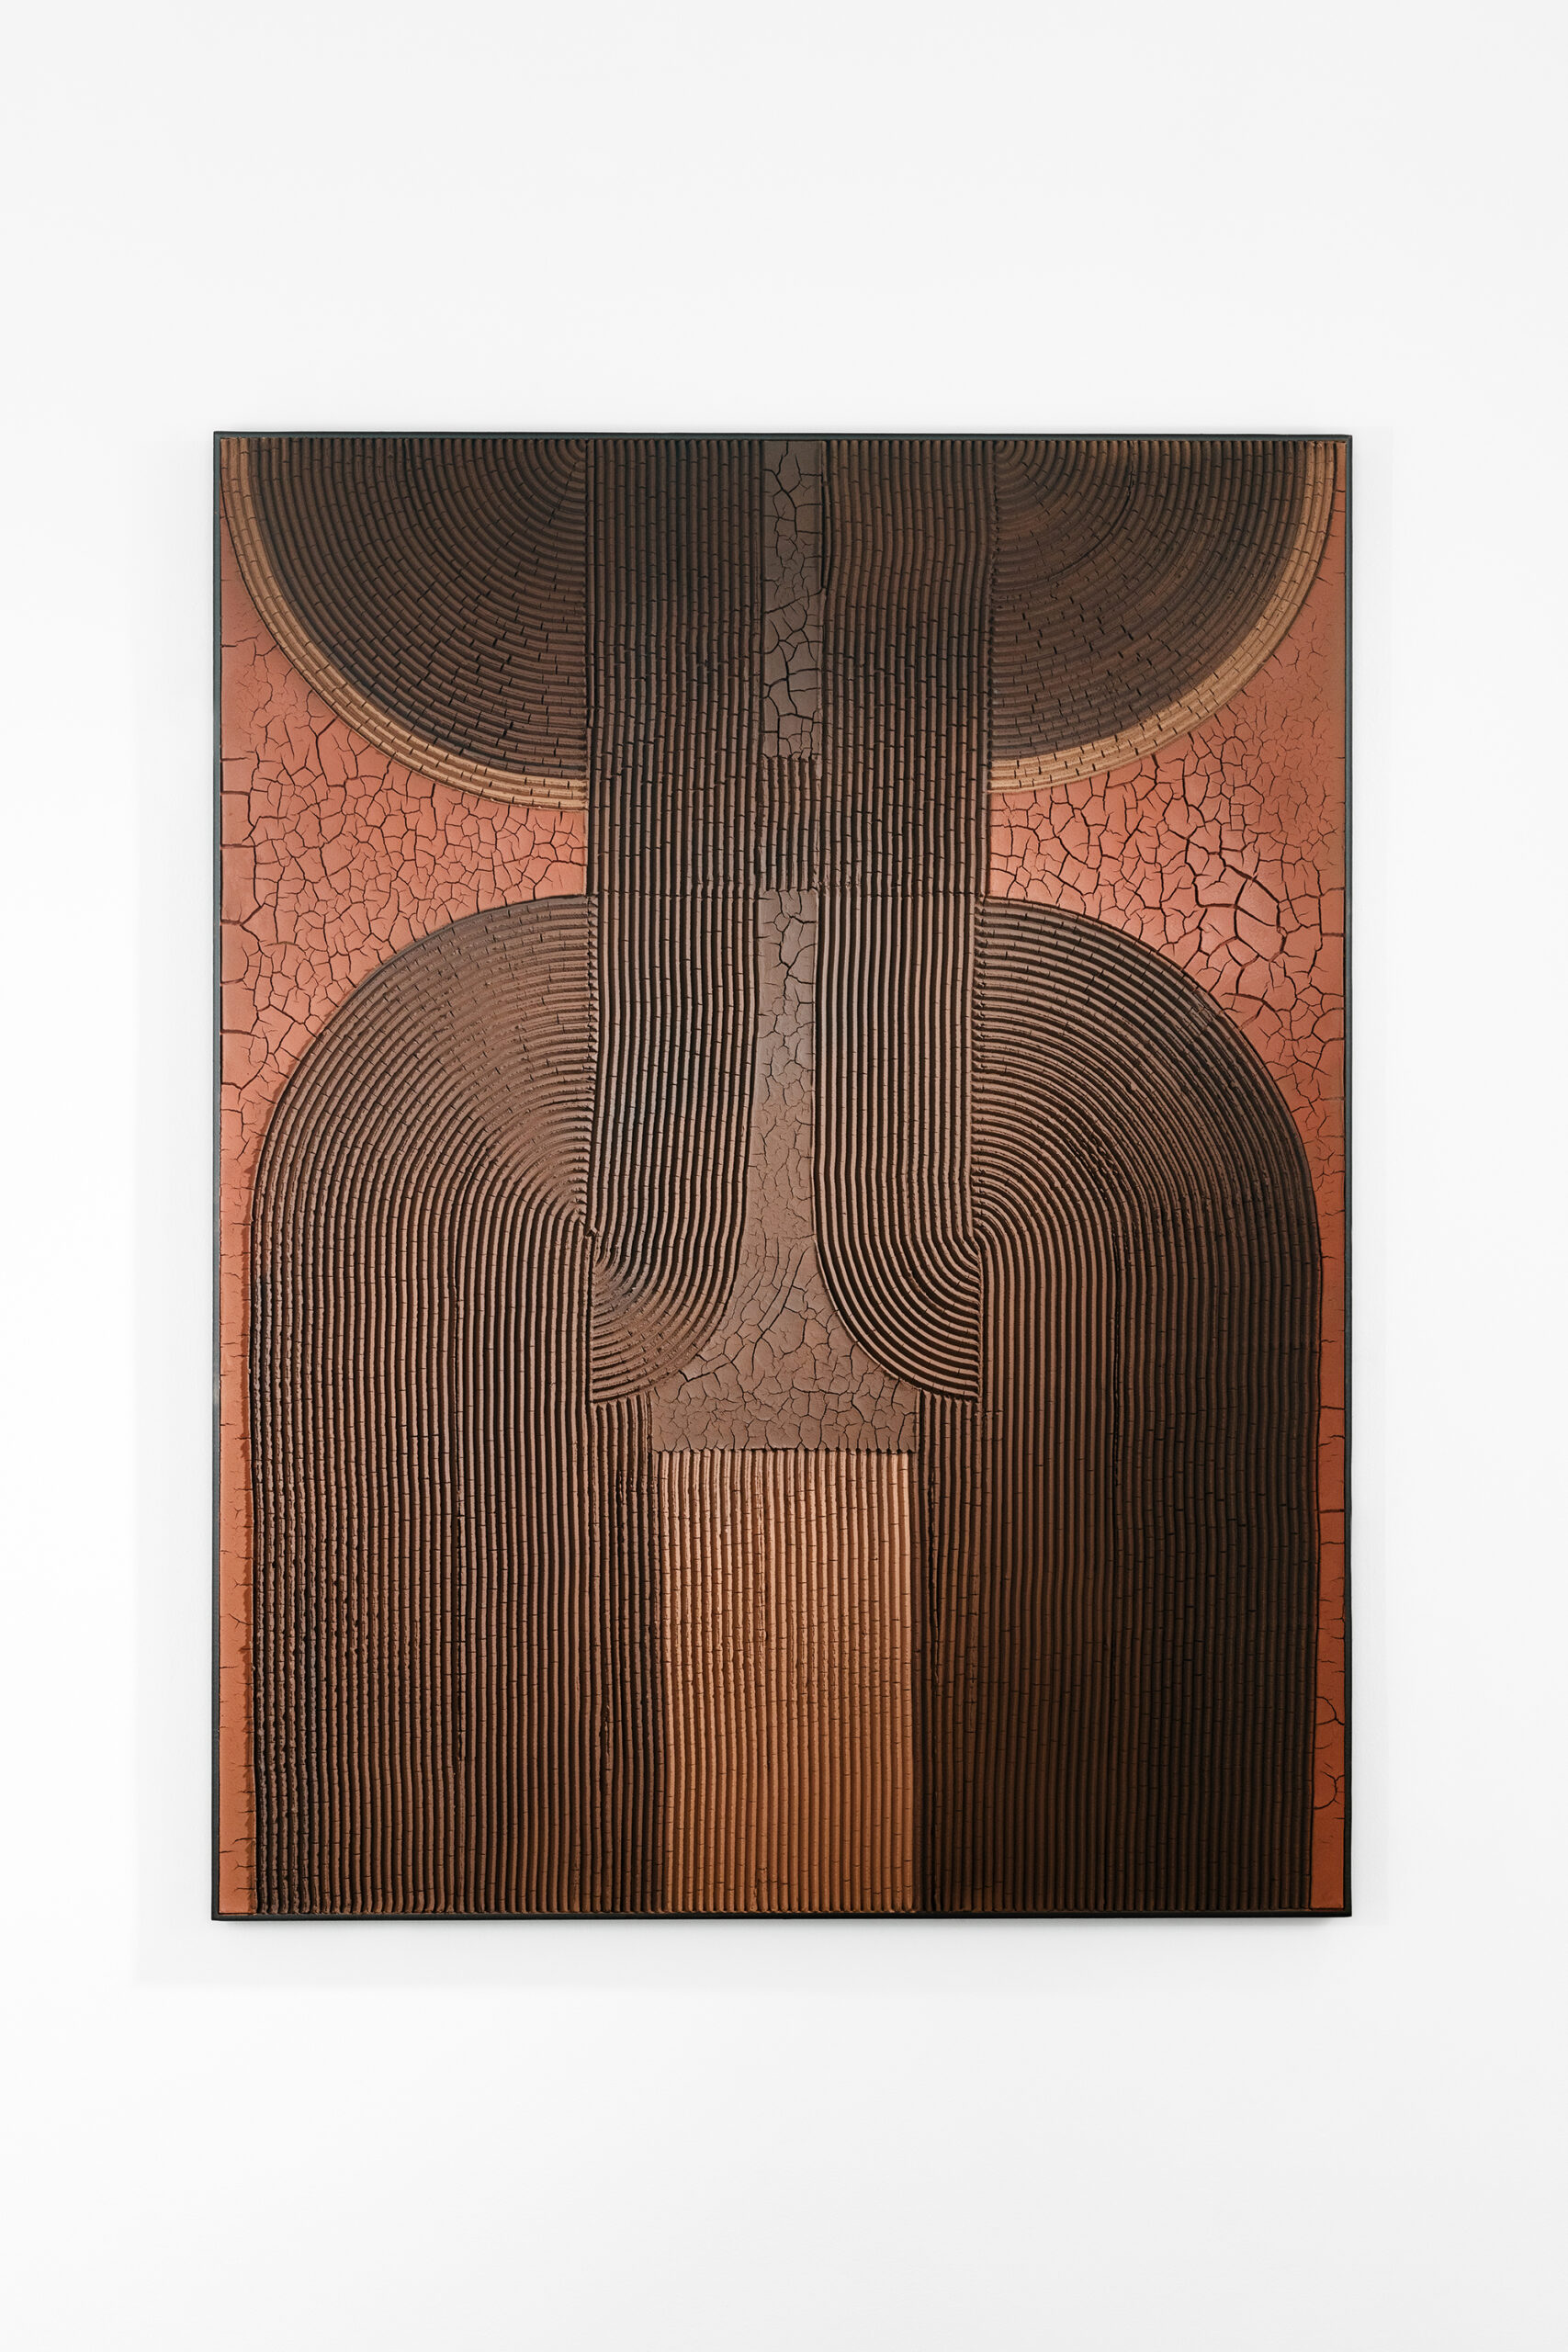 Les bâtisseurs, 2022 - Terre crue et pigments sur panneau en bois 170 x 130 cm